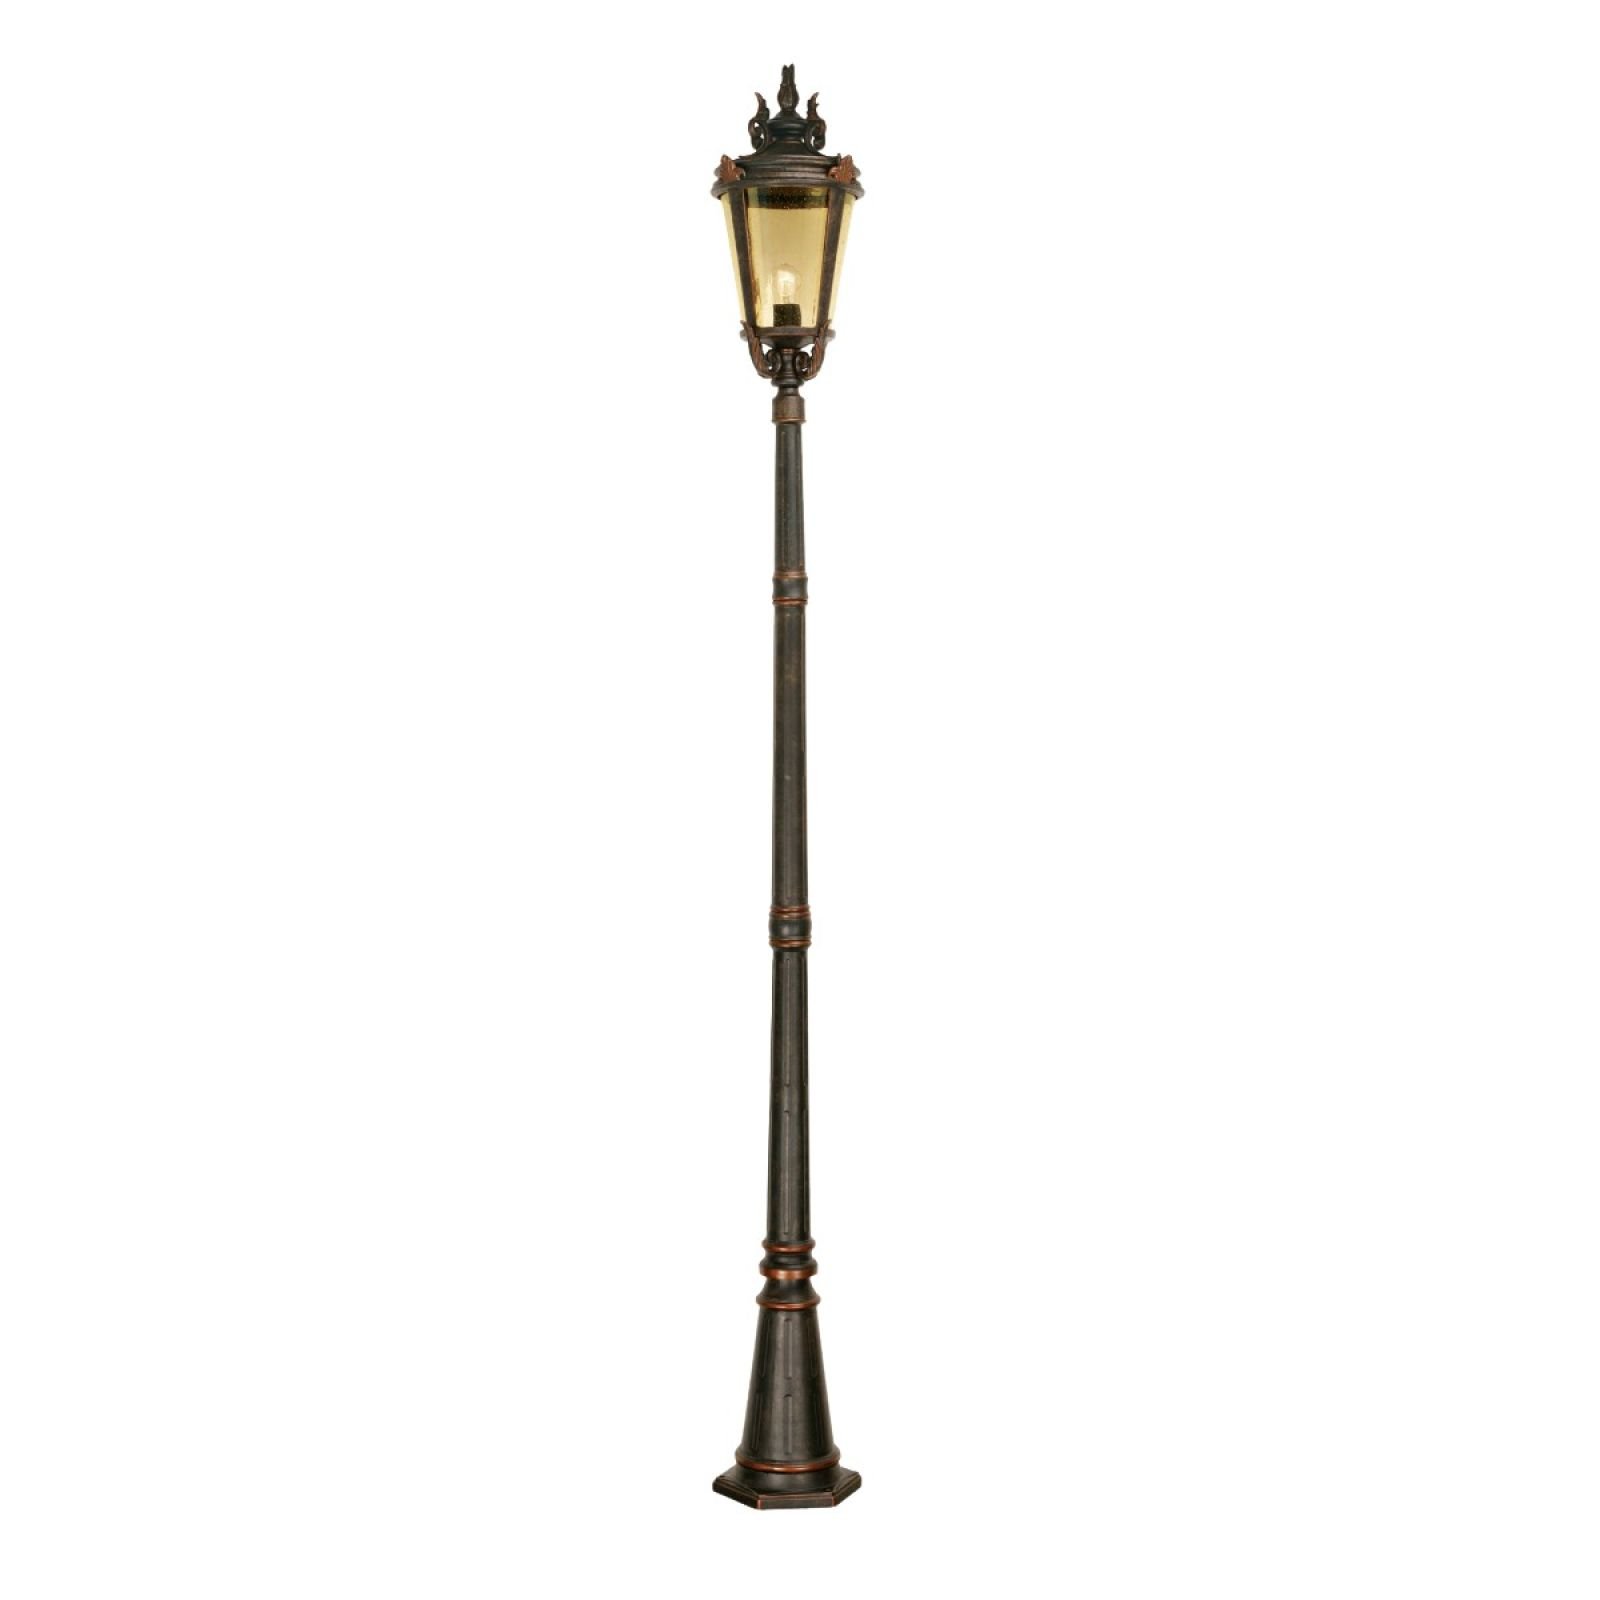 Dark bronze pedestal lantern with lamp post